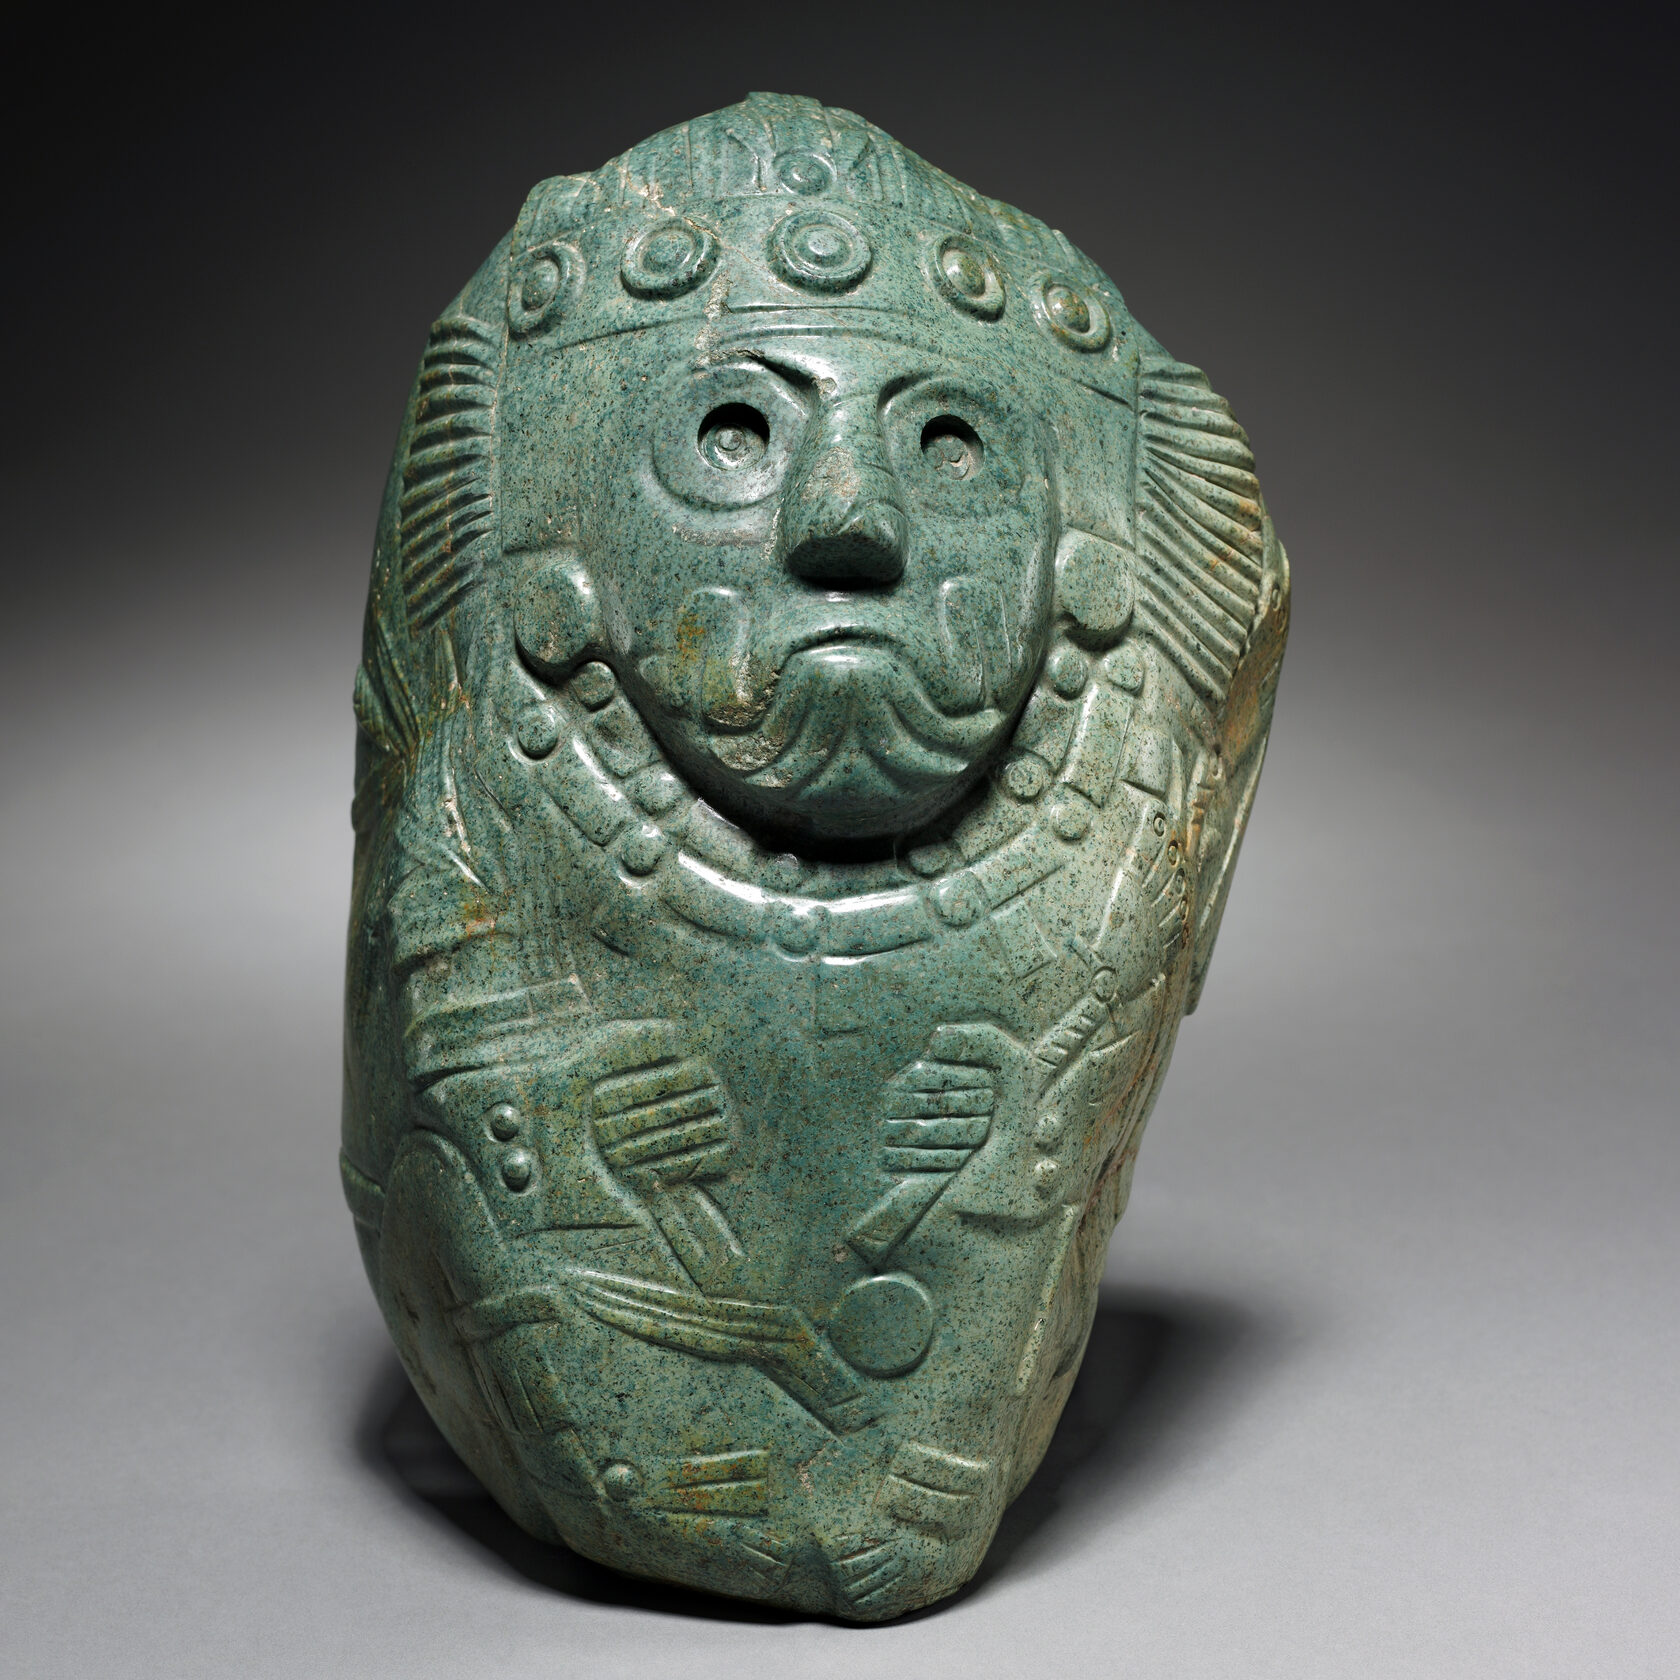 Тлалок со стеблем маиса в руке. Ацтеки, 13-16 вв. н.э. Коллекция The Cleveland Museum of Art.